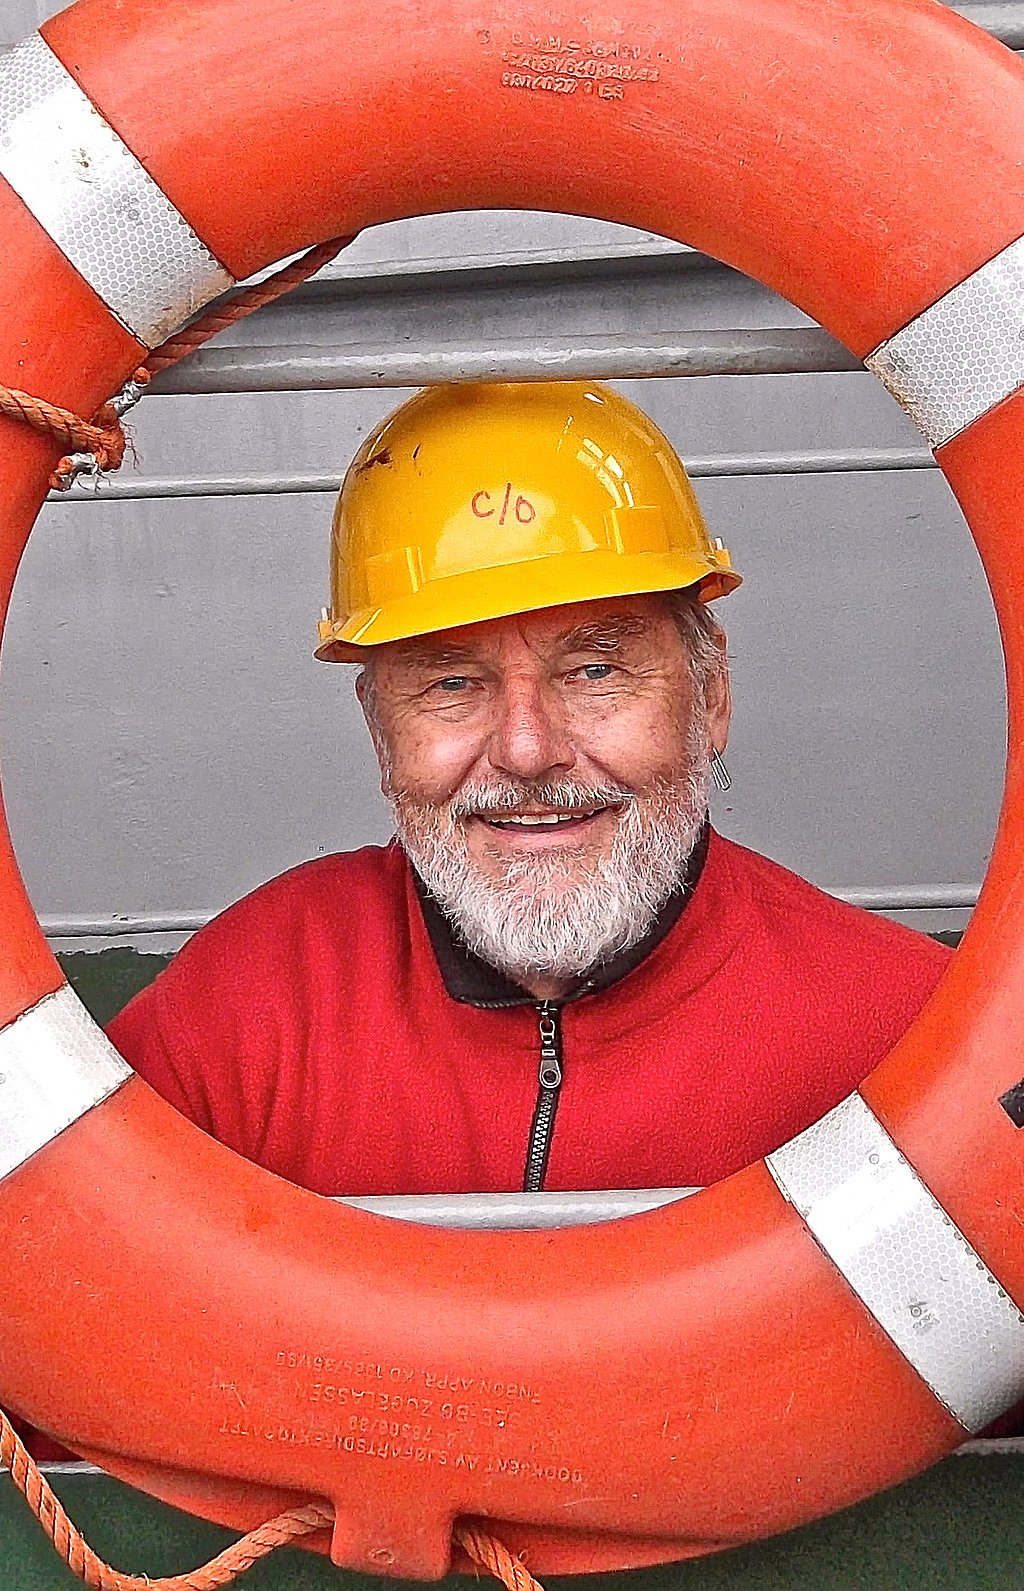 Joachim Wieler mit einem gelben Sicherheitshelm auf dem Kopf schaut durch einen Rettungsring